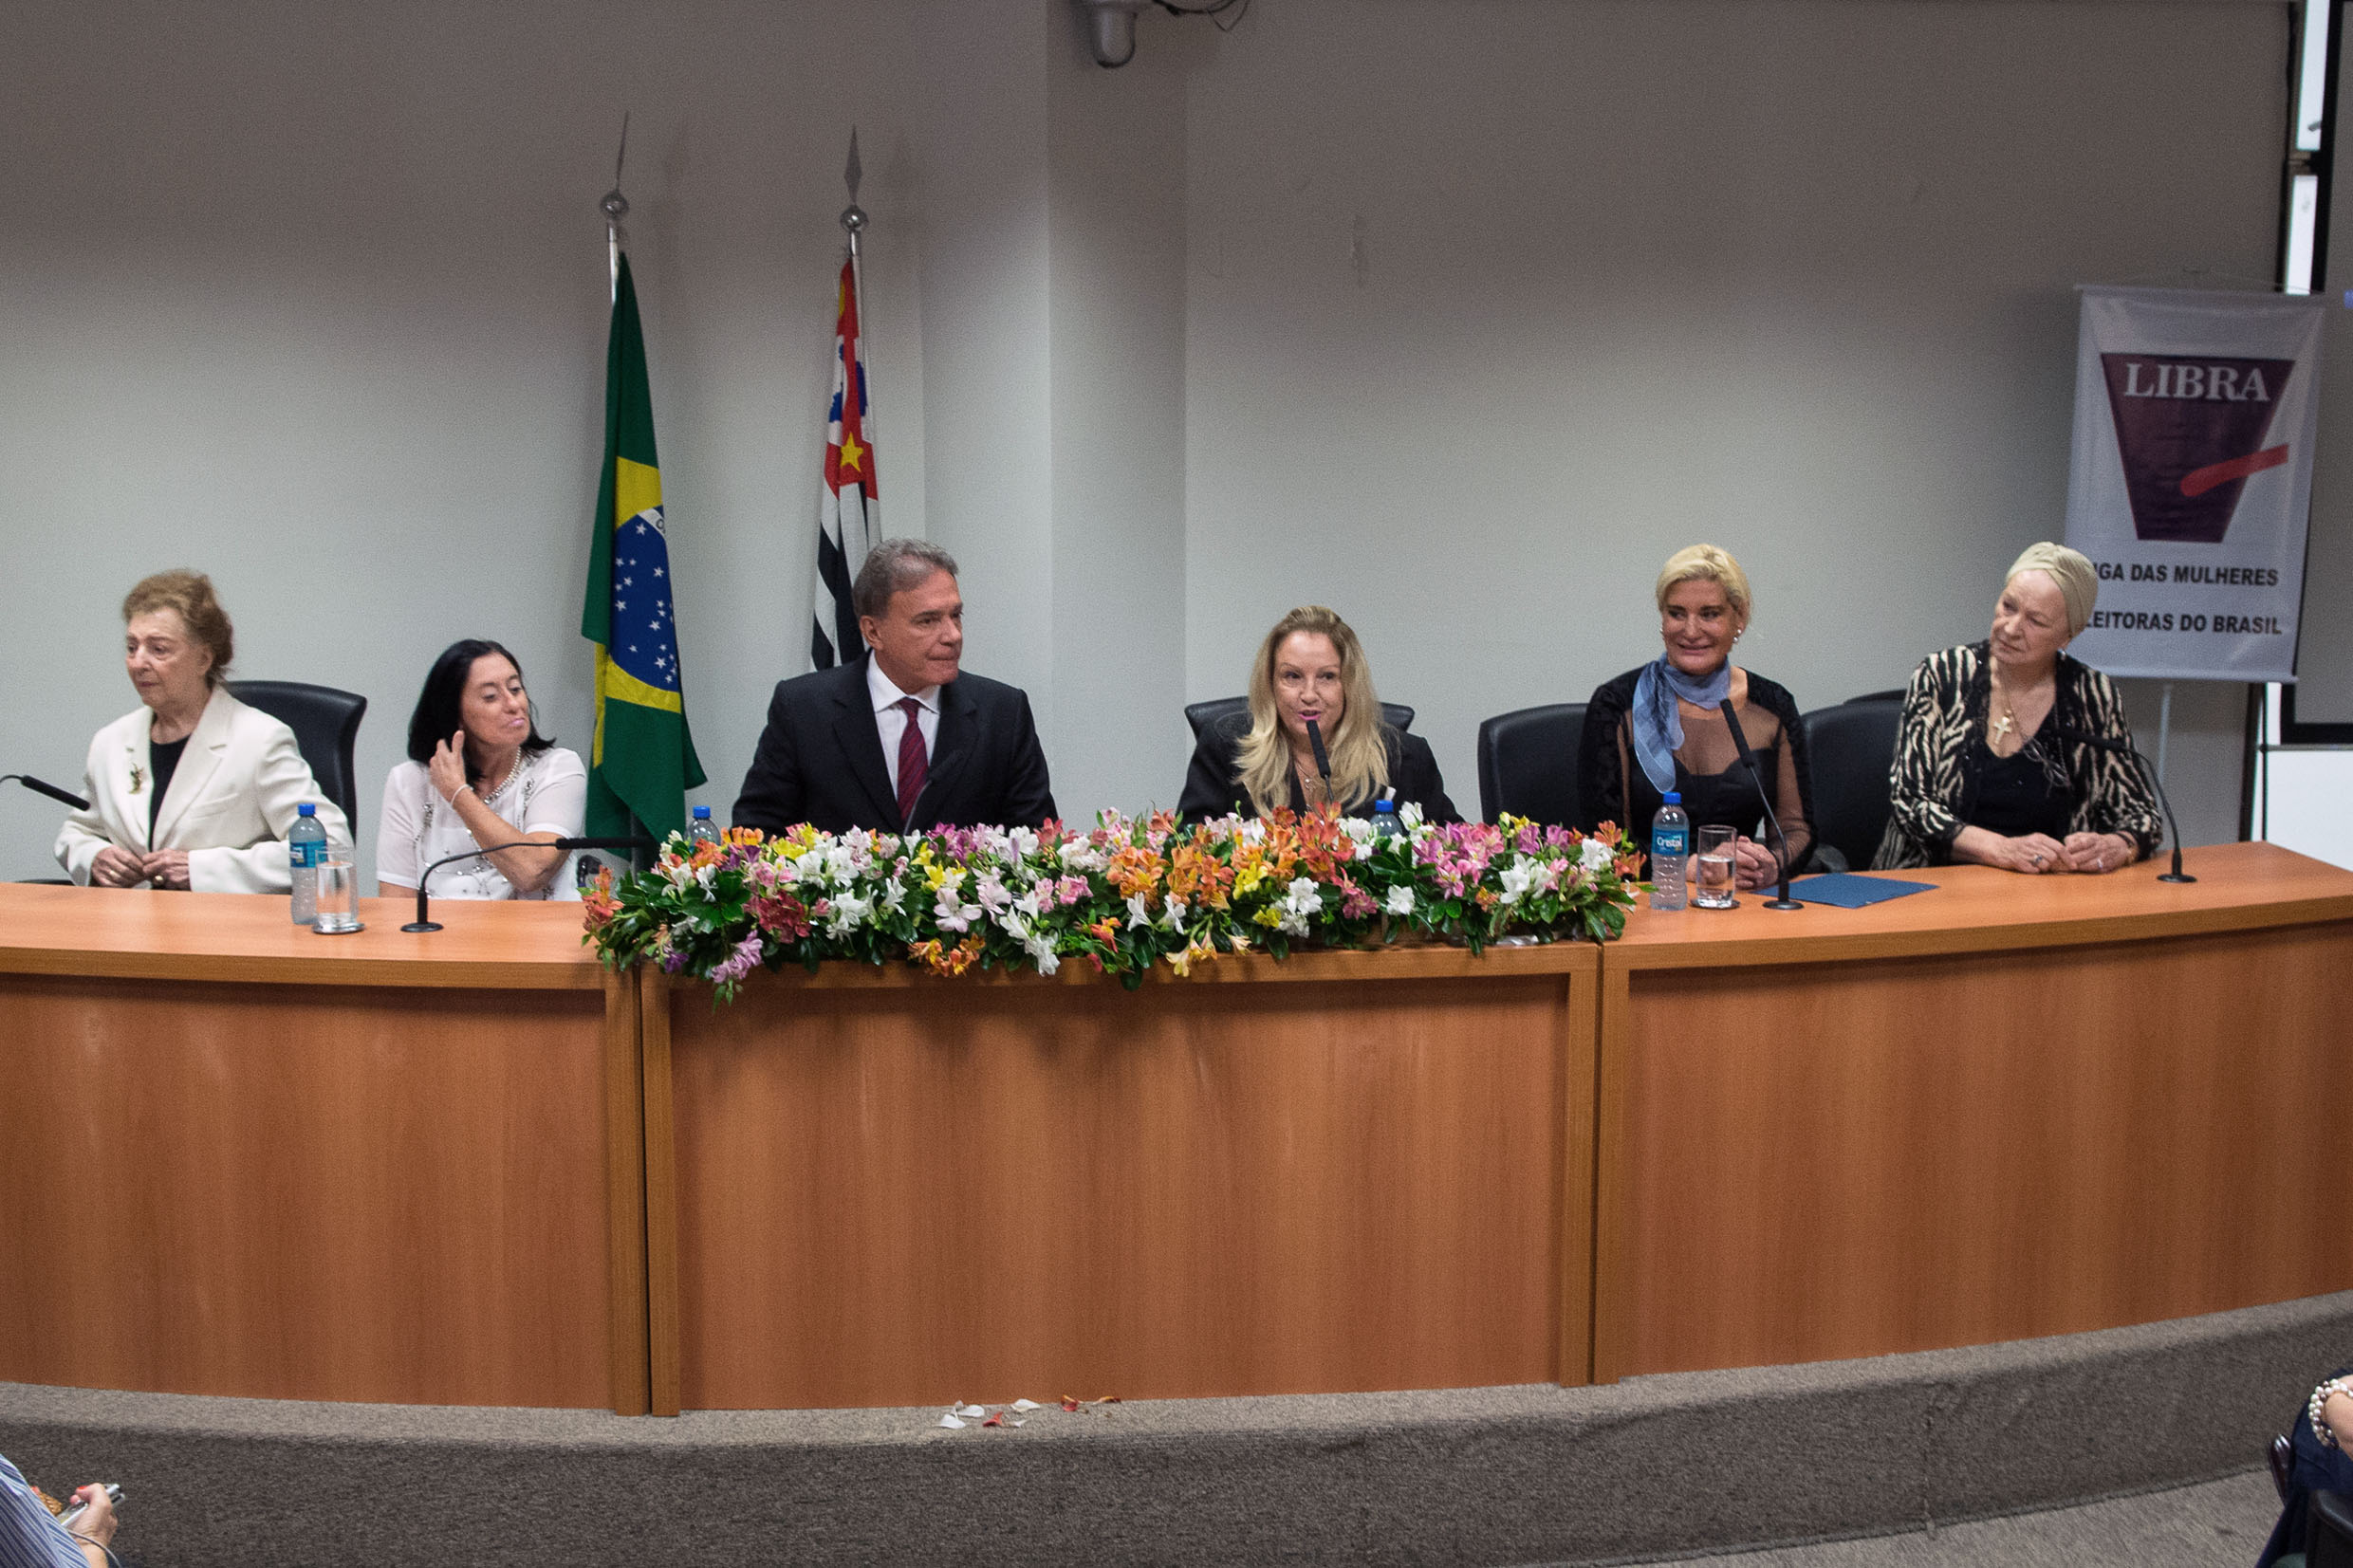 O encontro  promovido pela Liga das Mulheres Eleitoras do Brasil (Libra) <a style='float:right;color:#ccc' href='https://www3.al.sp.gov.br/repositorio/noticia/N-04-2015/fg169370.jpg' target=_blank><i class='bi bi-zoom-in'></i> Clique para ver a imagem </a>